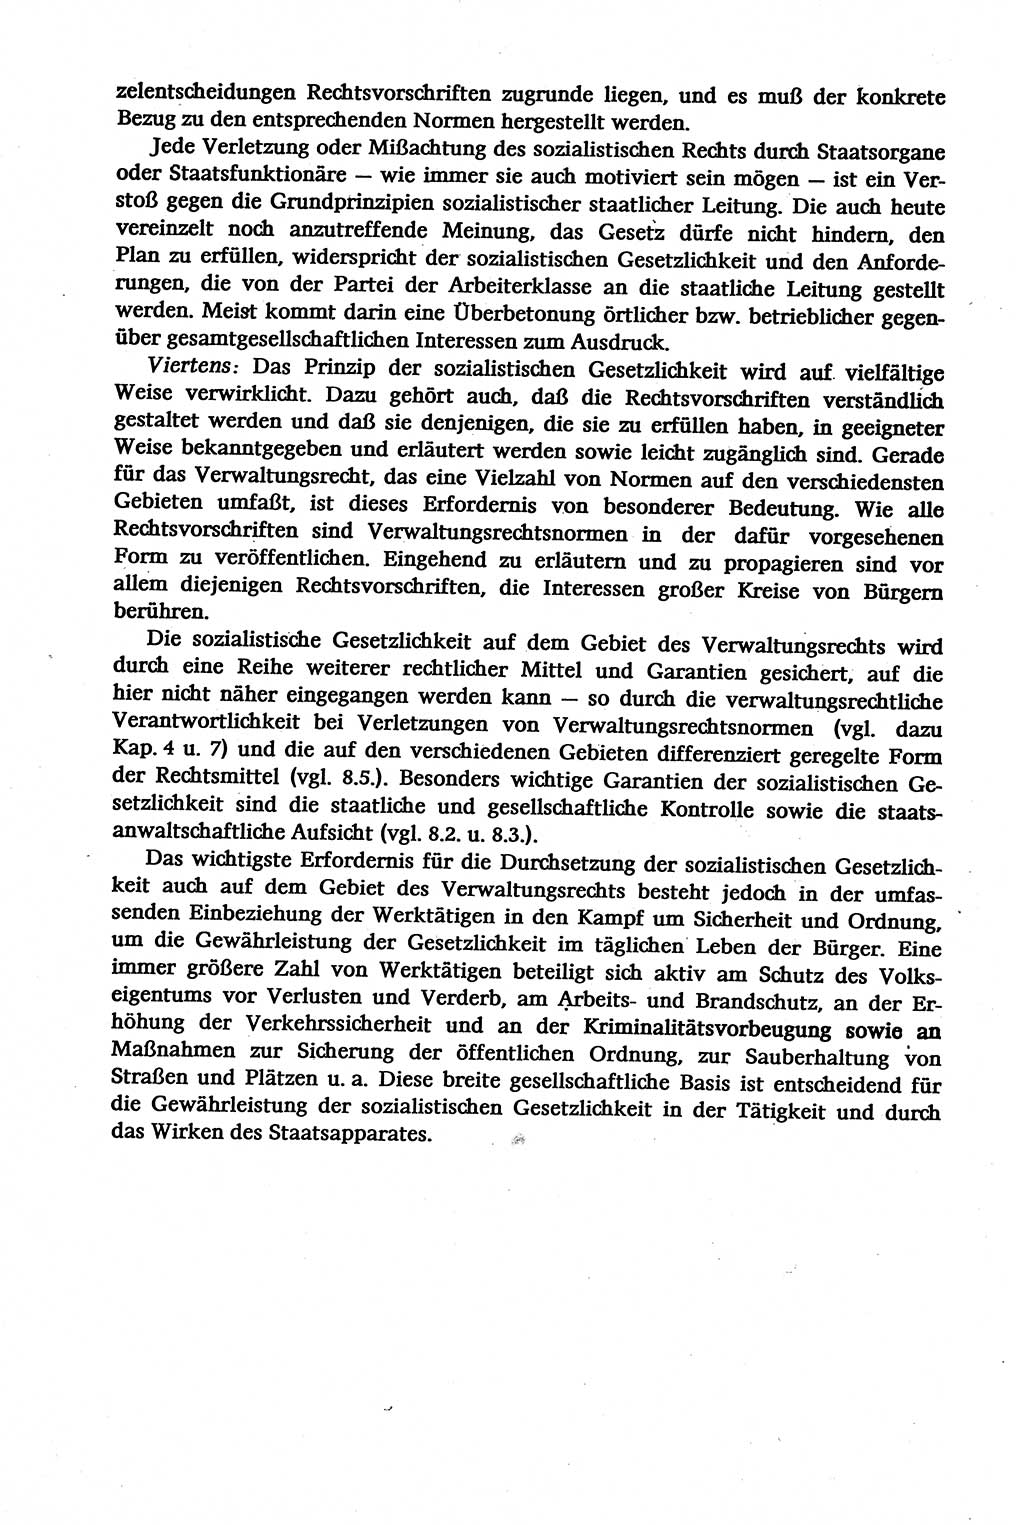 Verwaltungsrecht [Deutsche Demokratische Republik (DDR)], Lehrbuch 1979, Seite 88 (Verw.-R. DDR Lb. 1979, S. 88)